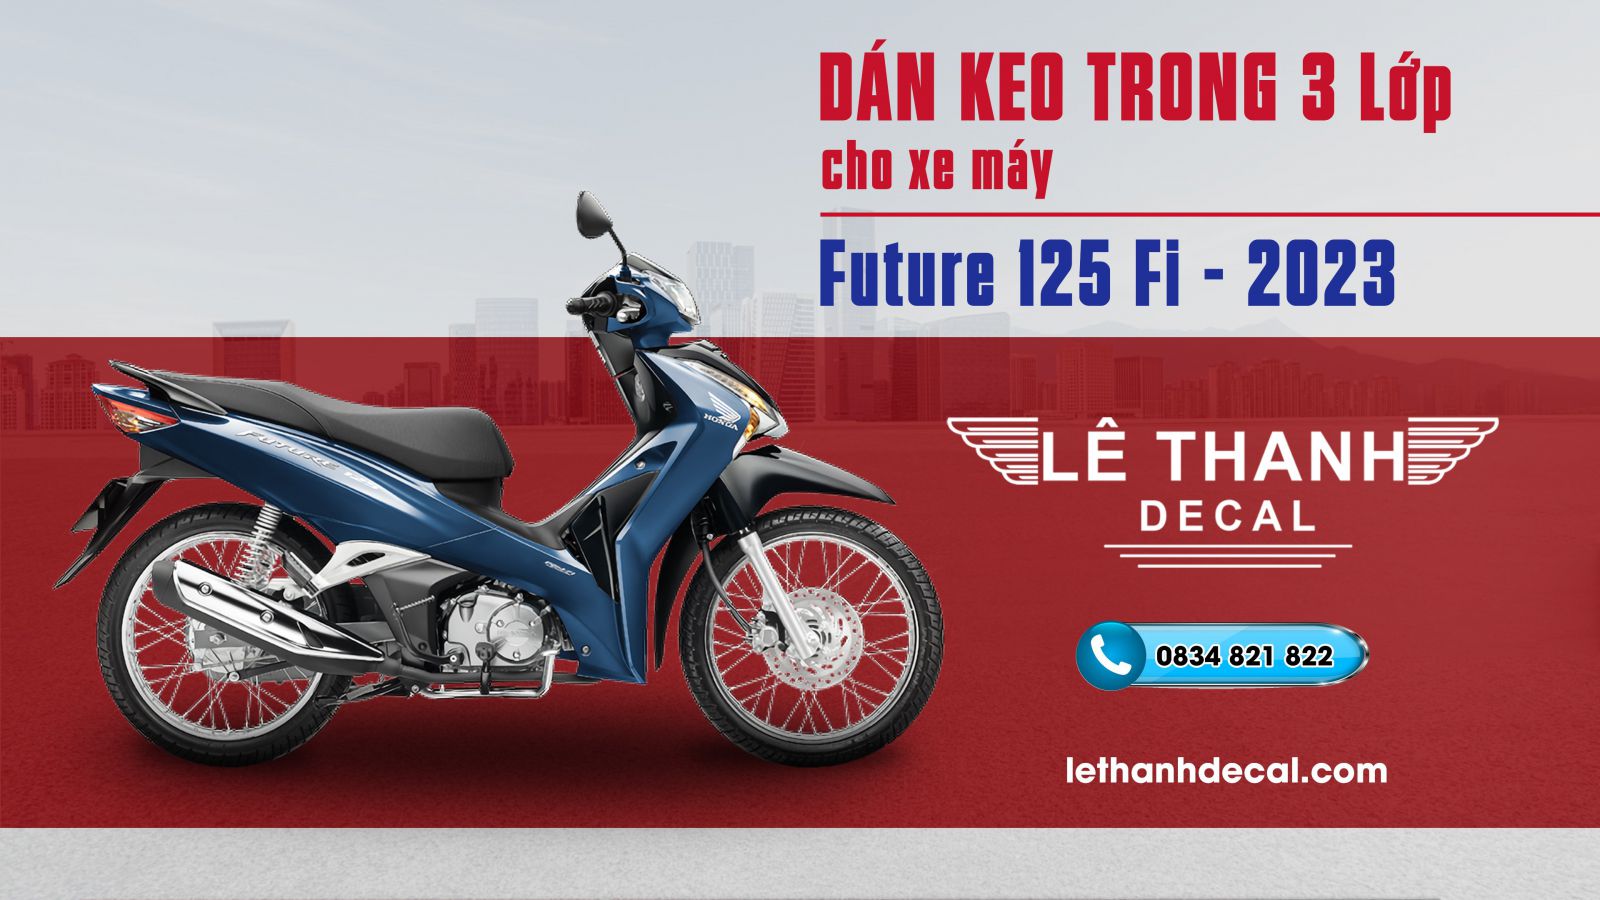 Dán keo trong 3 lớp Honda Future 125 Fi xanh đen 2023